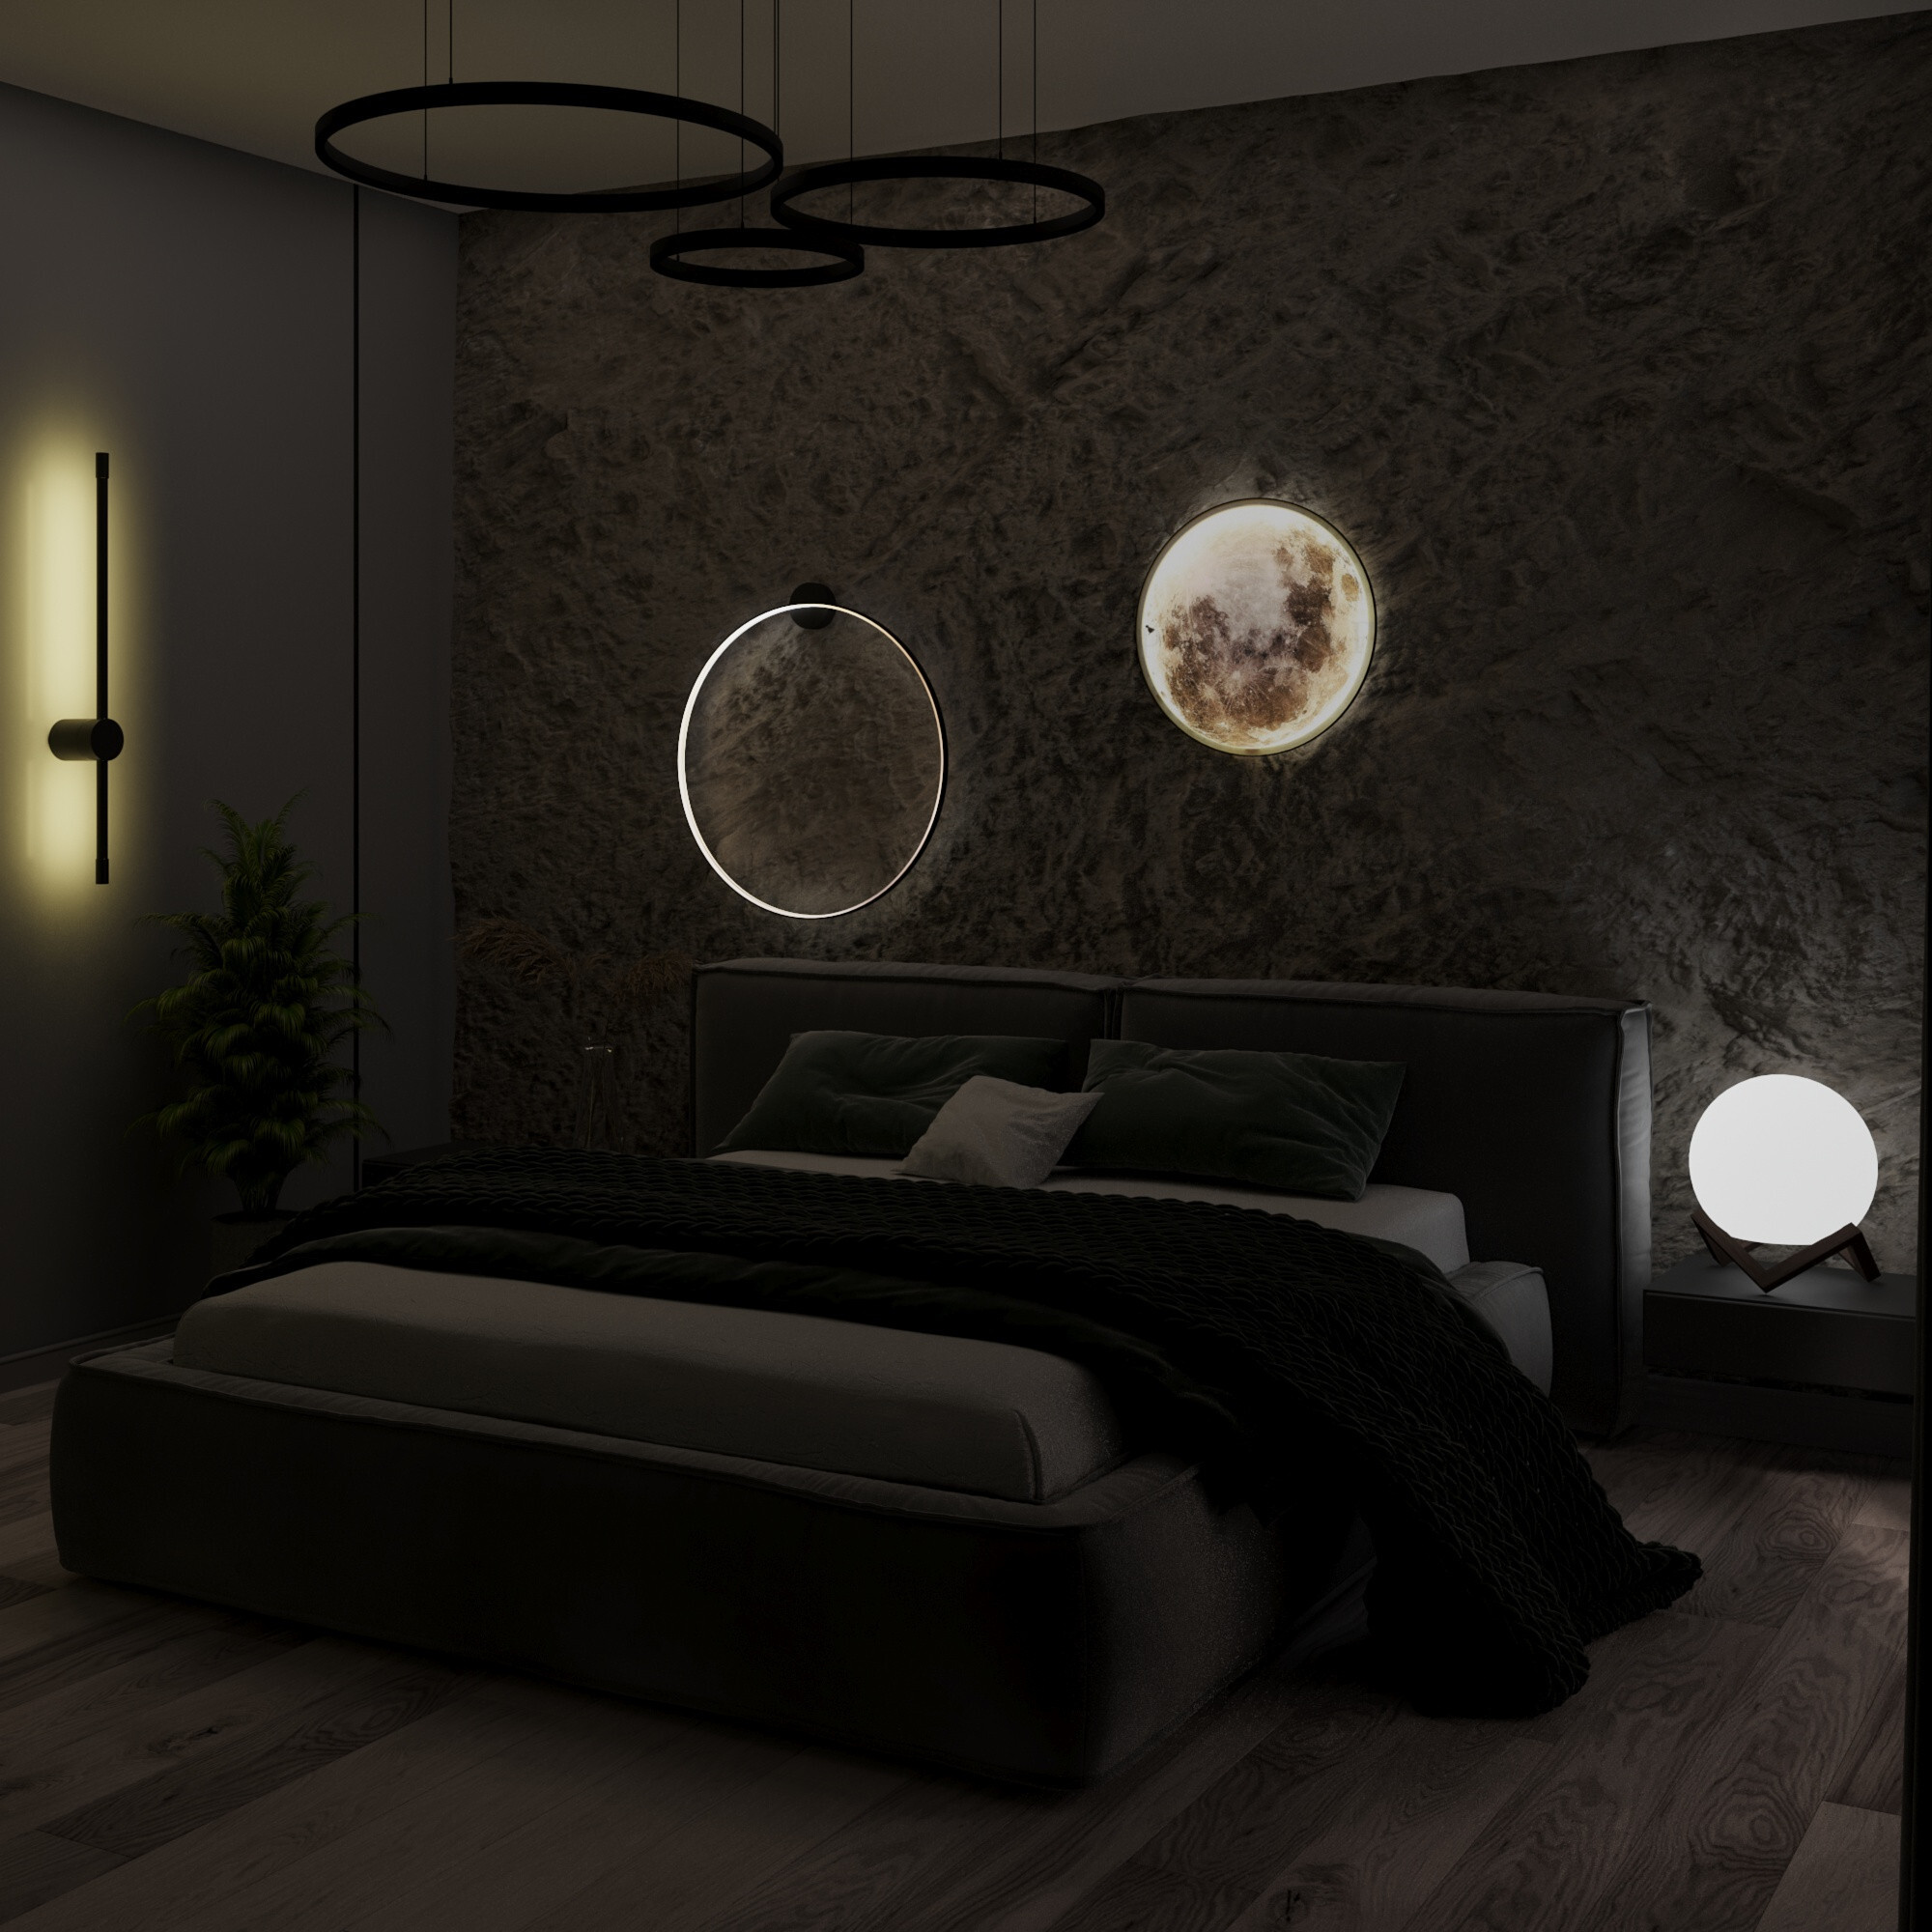 Интерьер спальни с подсветкой настенной и светильниками над кроватью